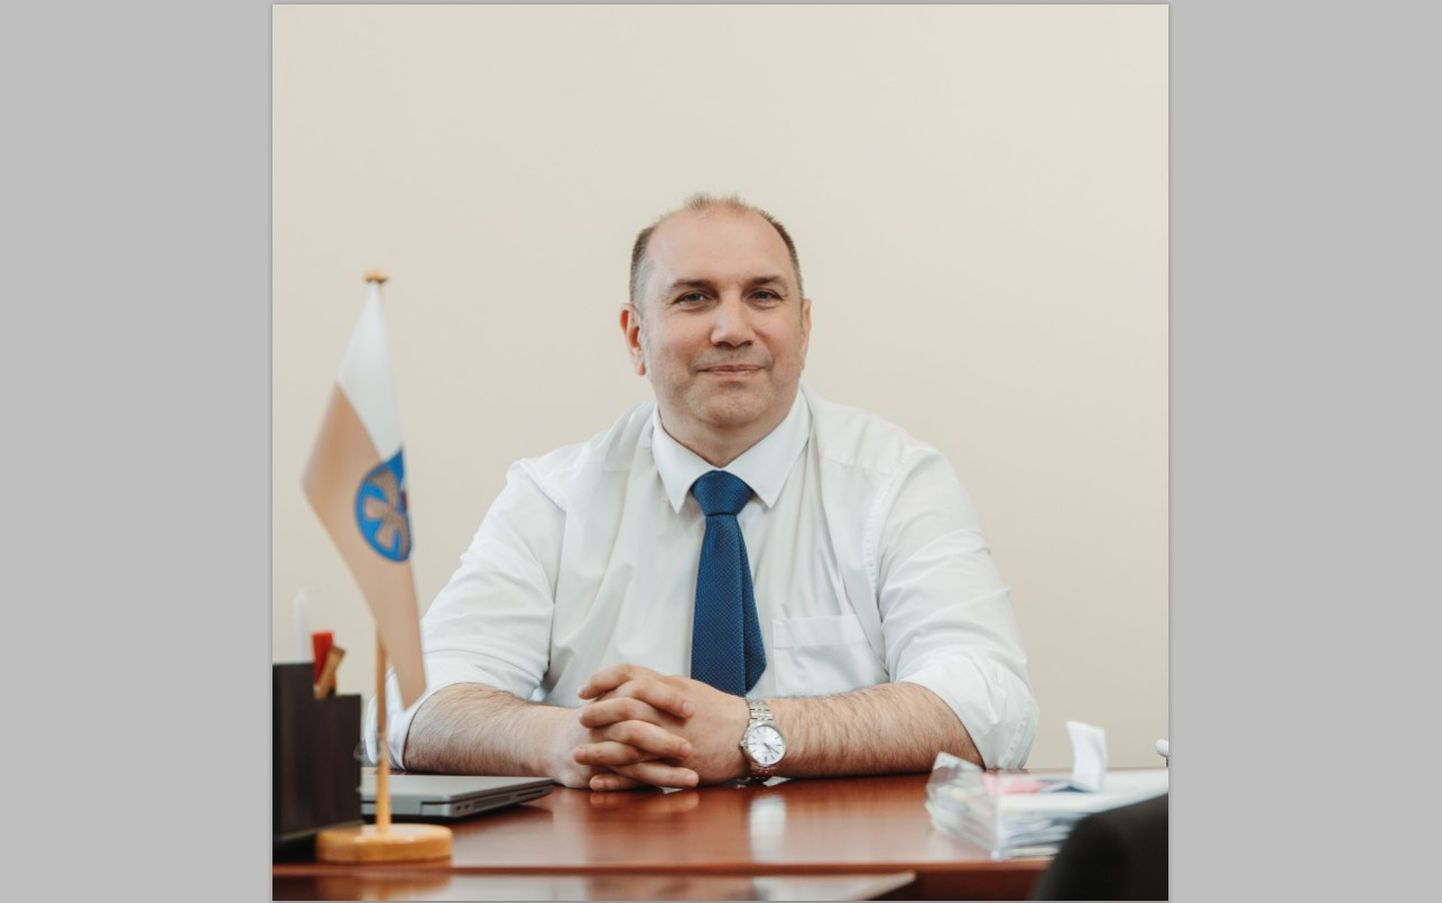 Jelgavas novada domes priekšsēdētājs Madars Lasmanis